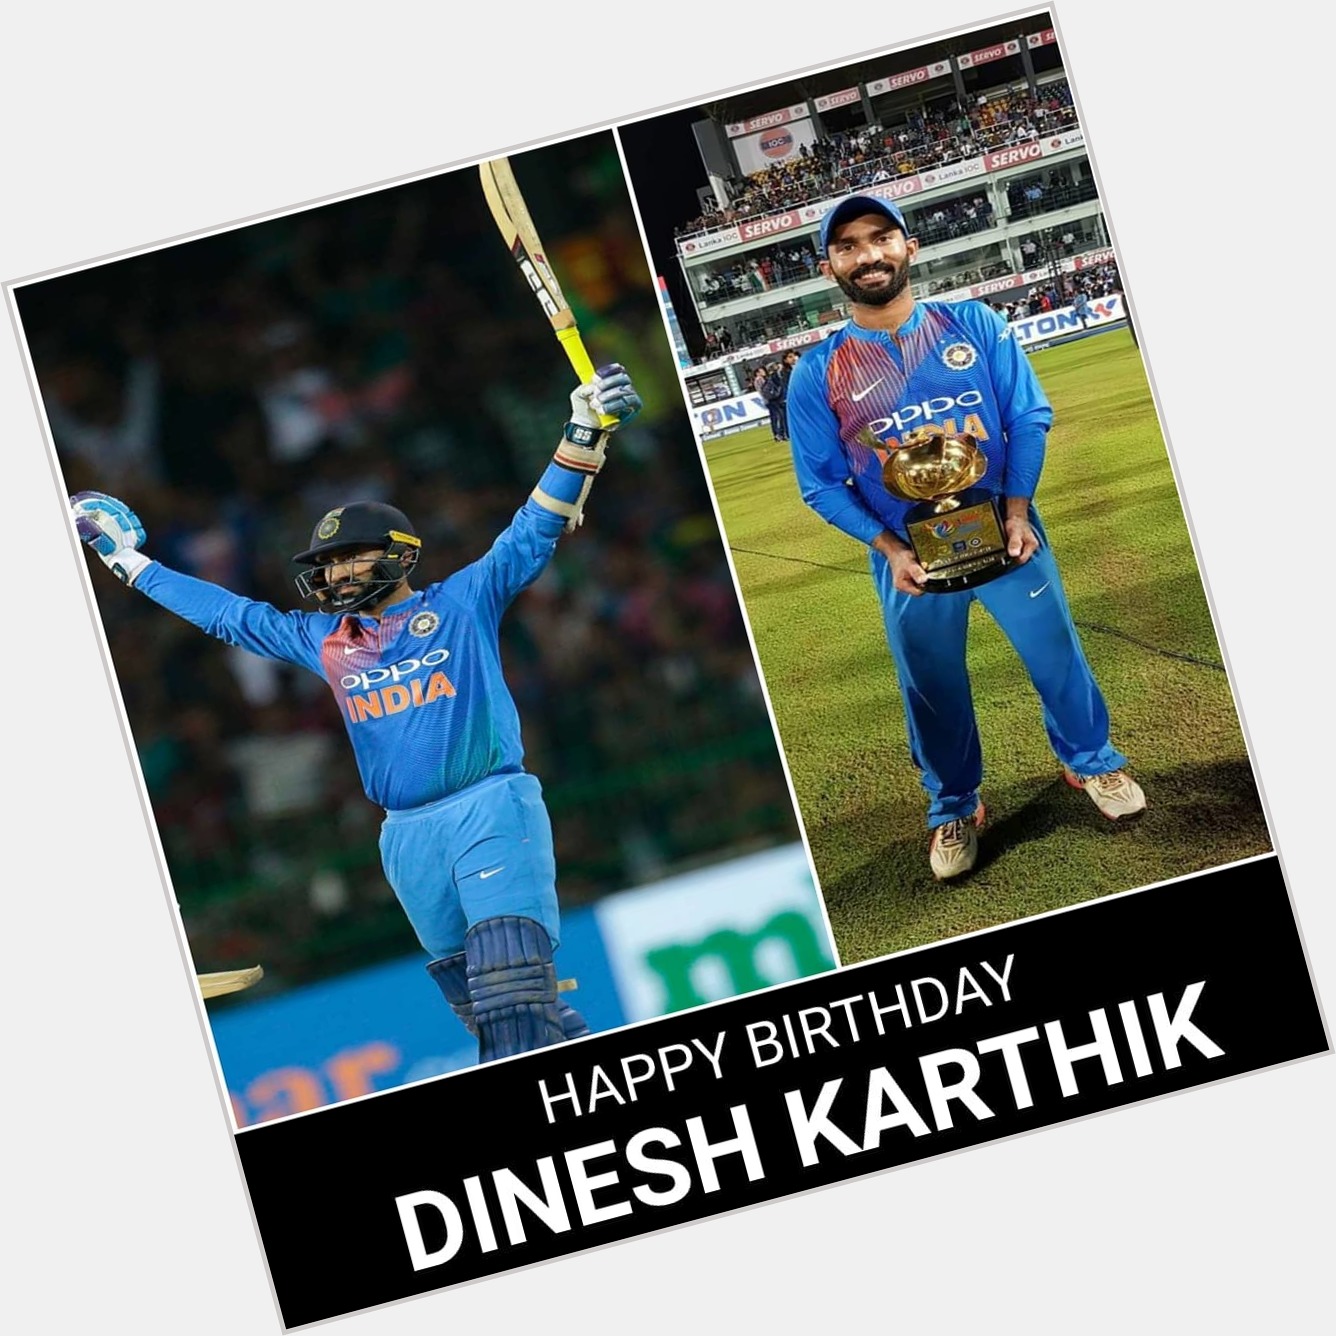  Happy Birthday dinesh Karthik 